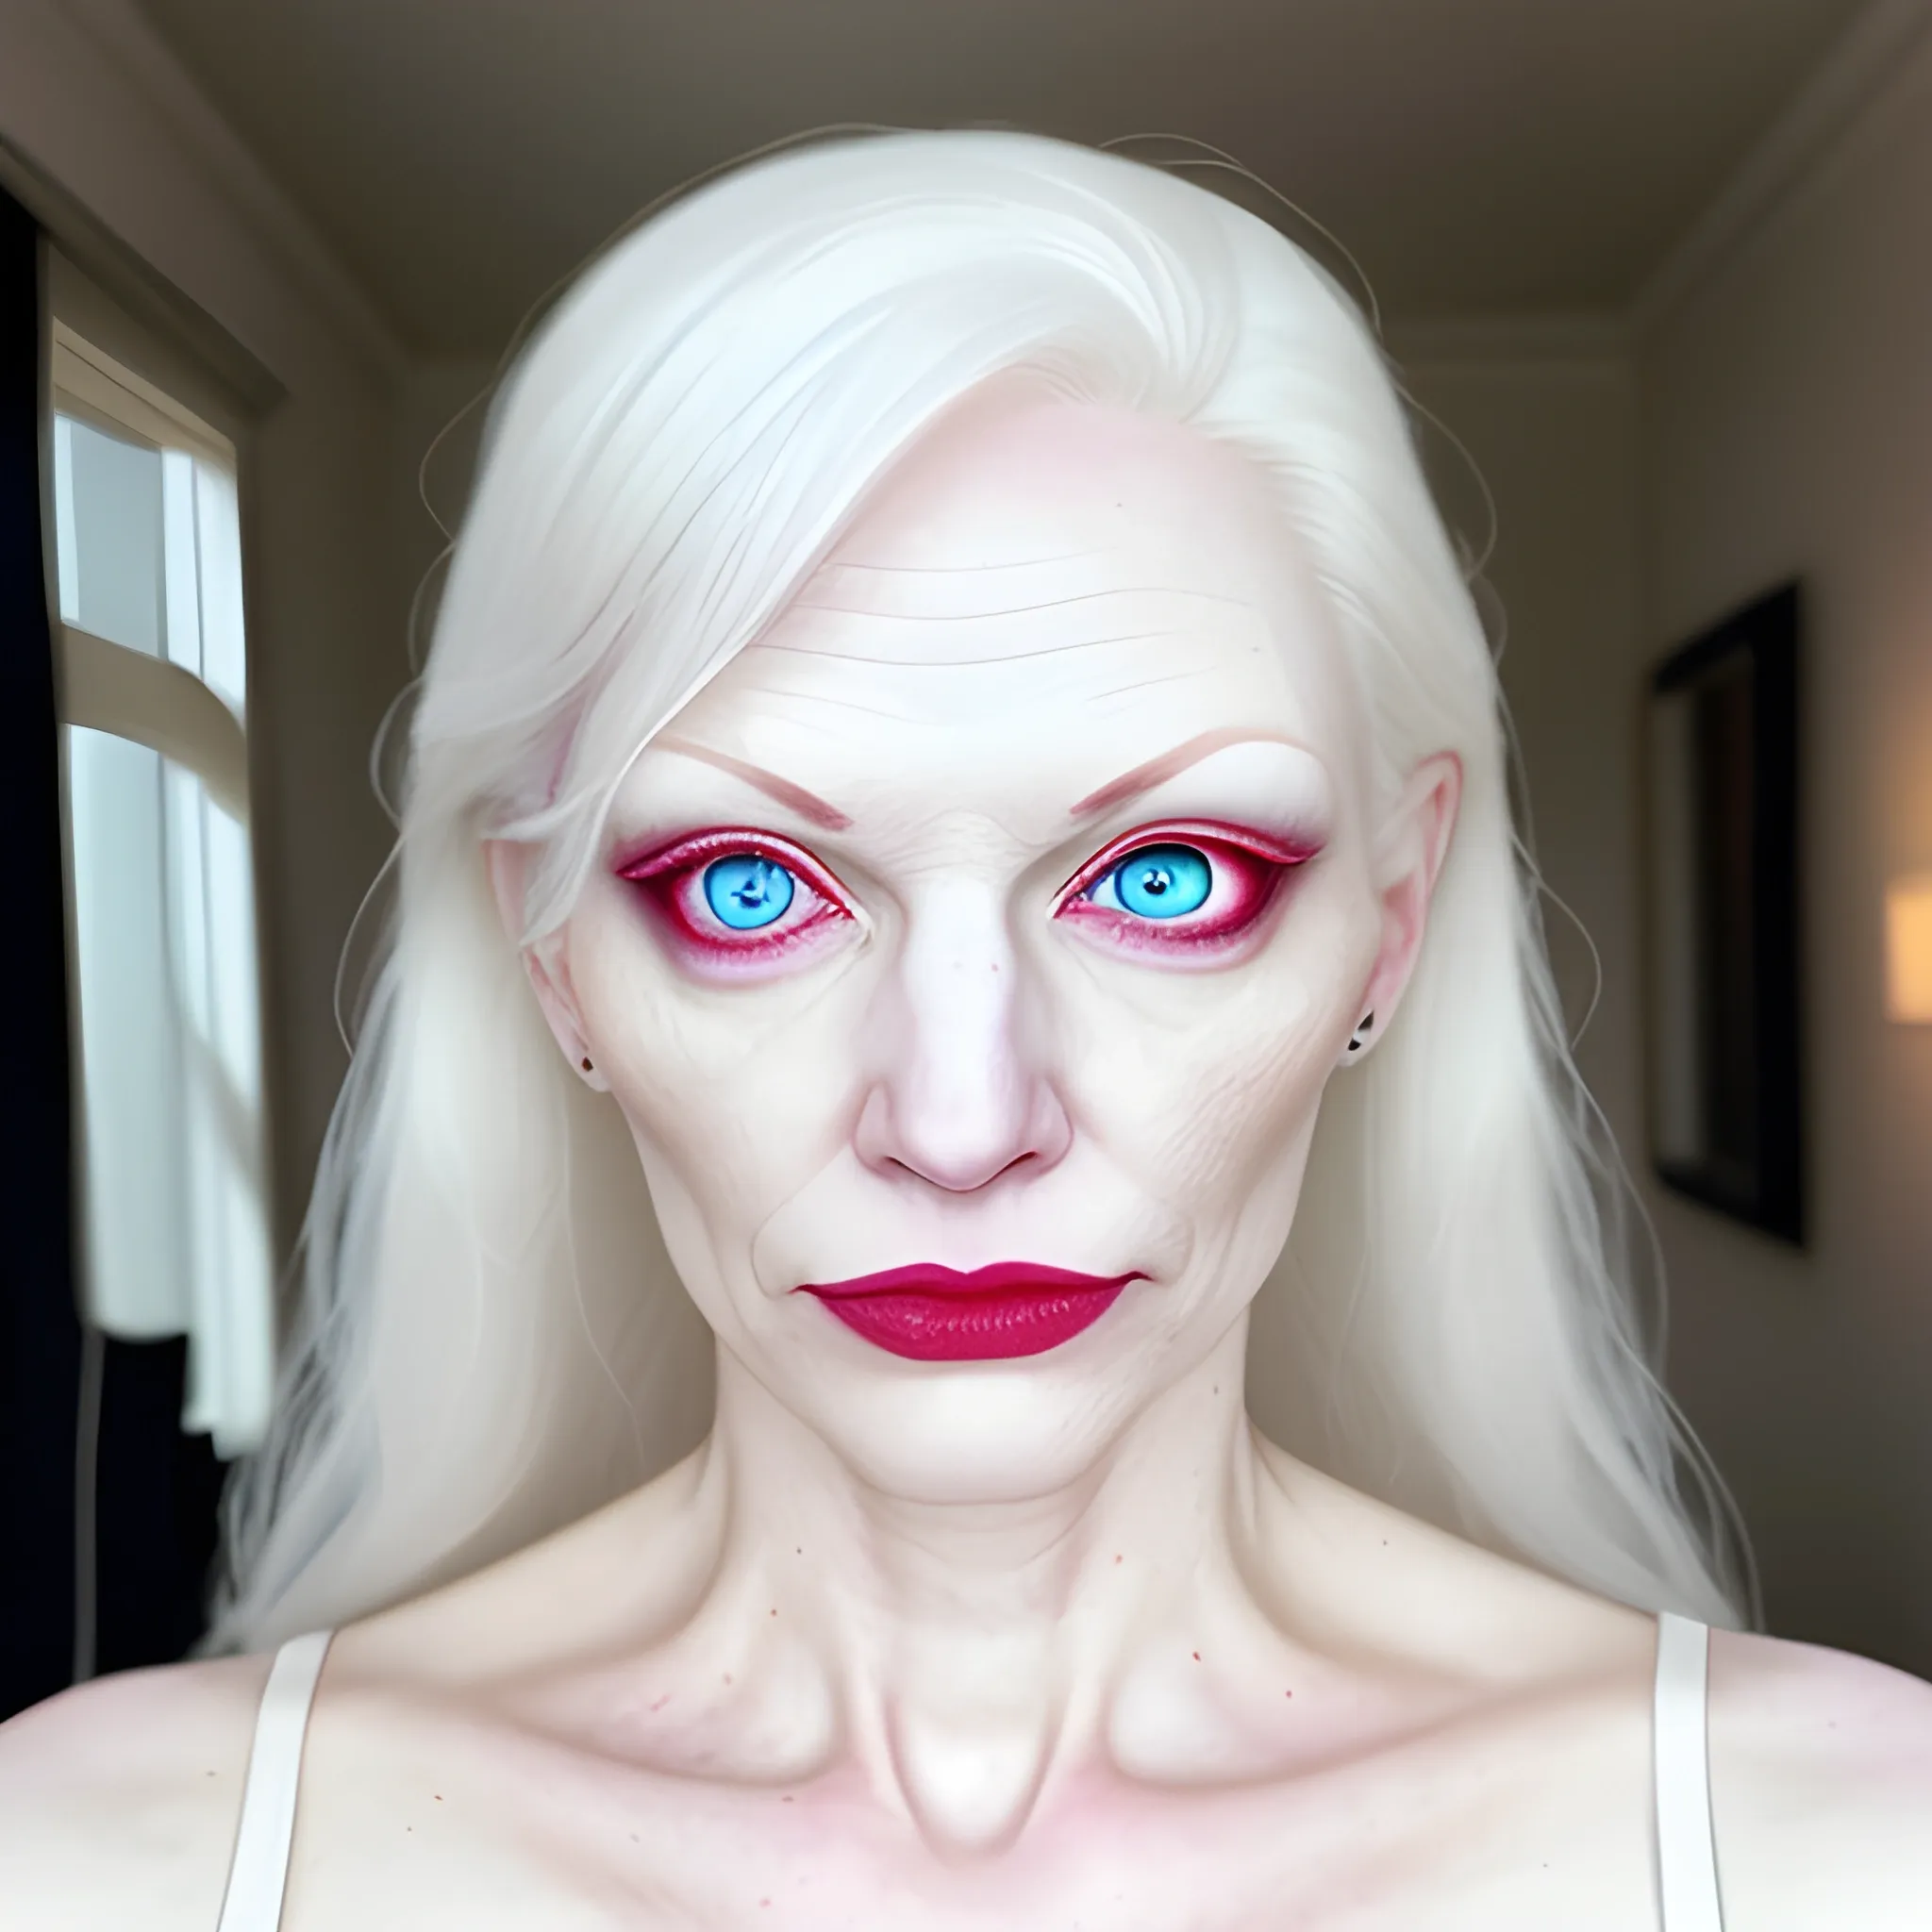 albino girl, white pupils, blurry
